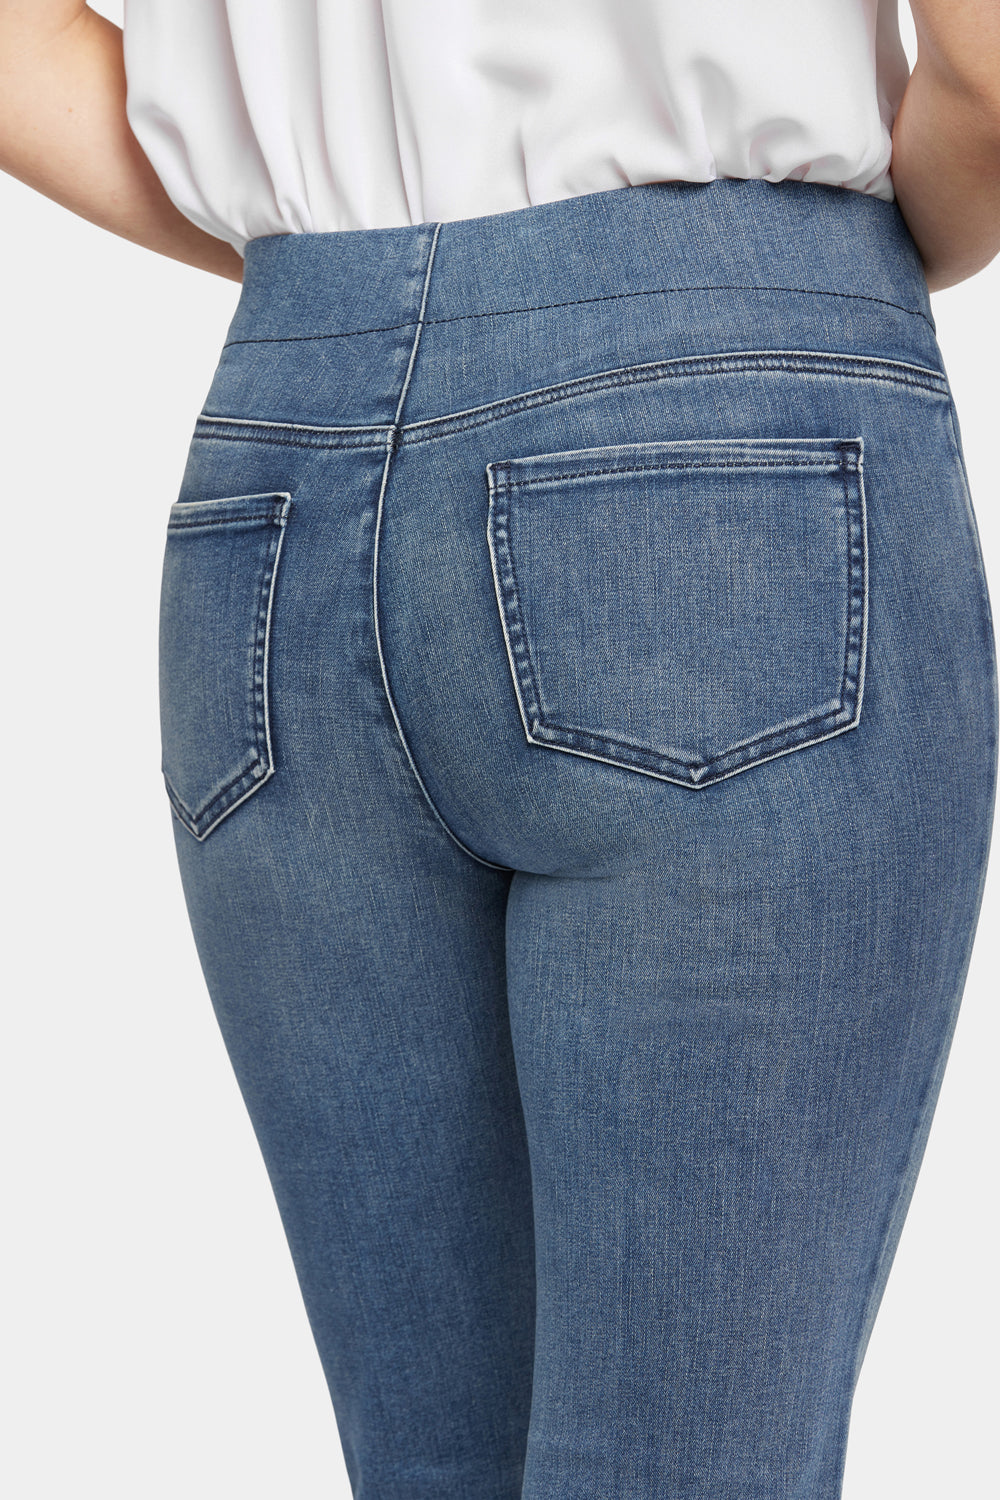 Pull-on Straight Jeans - Pristine Blue | NYDJ